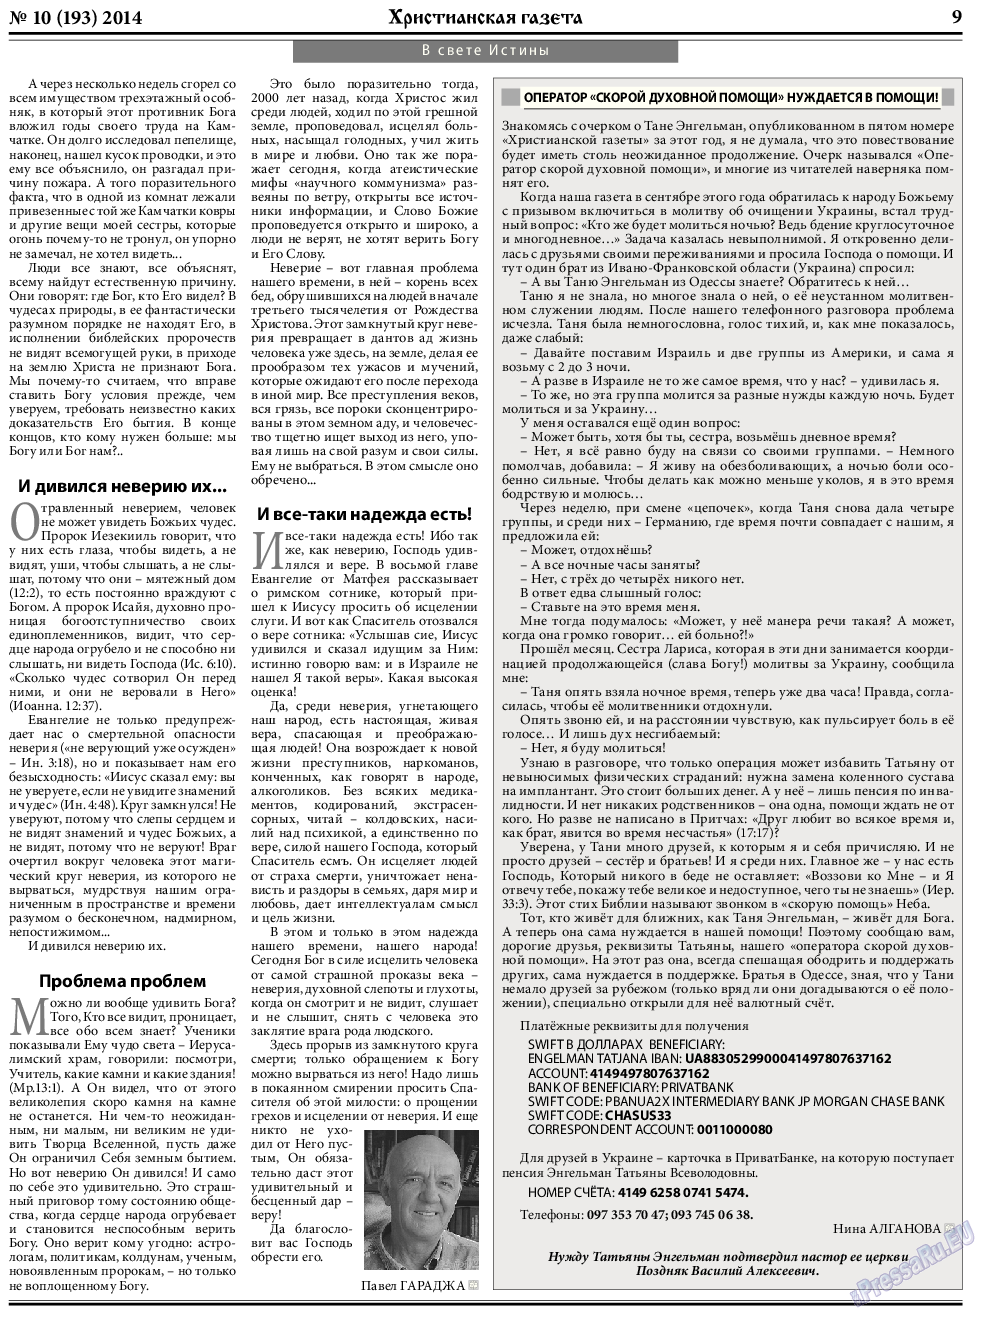 Христианская газета, газета. 2014 №10 стр.9